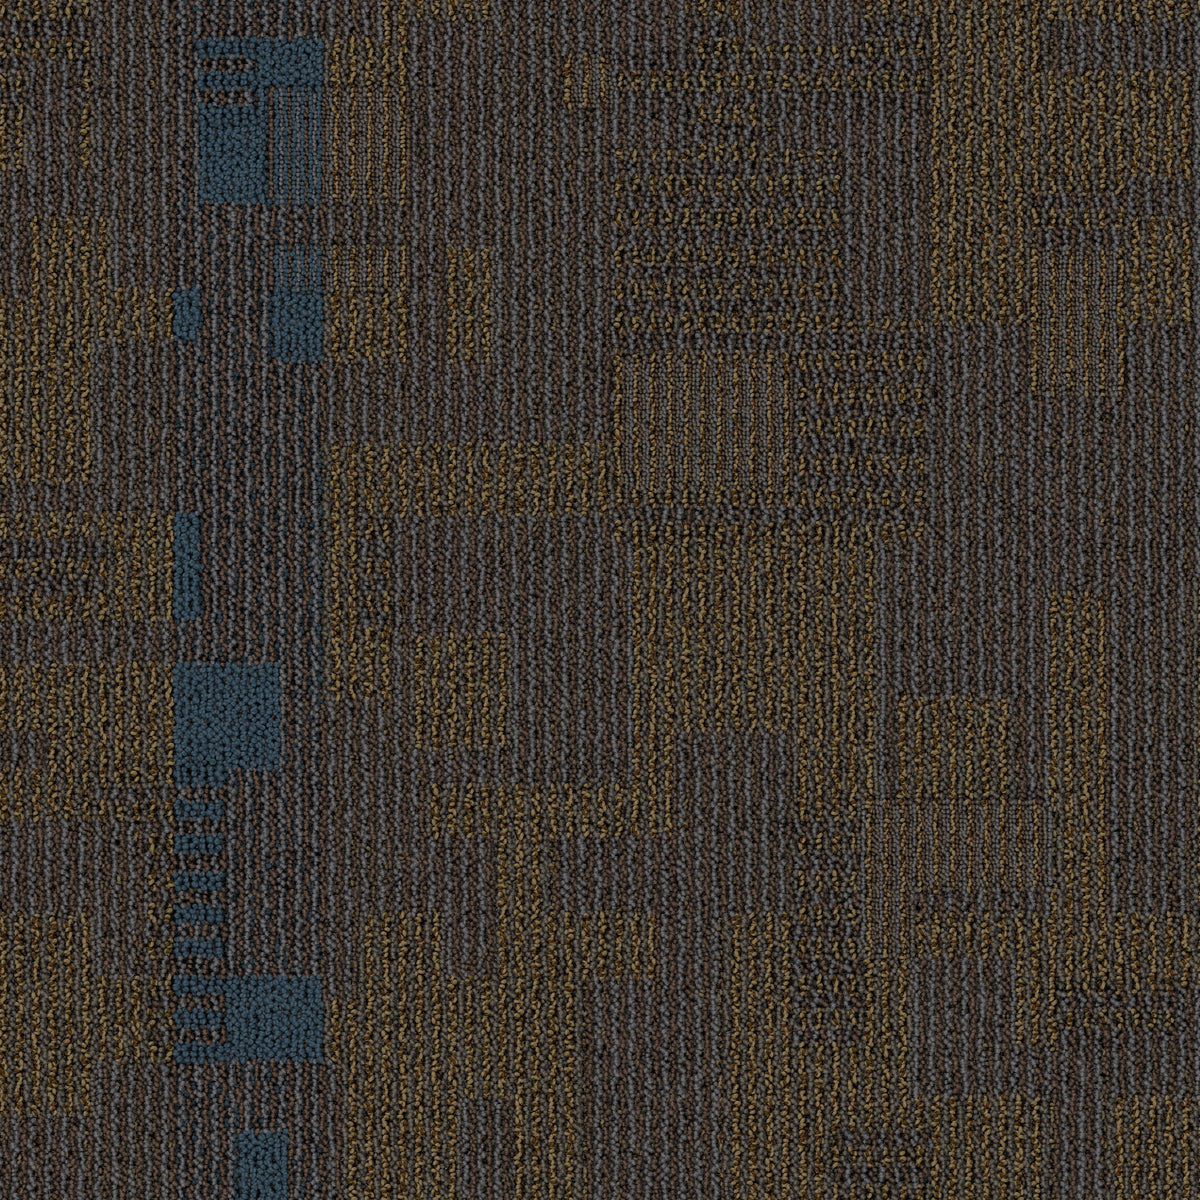 Mohawk Group - Renegade - Mutineer - Carpet Tile - Wild Thing